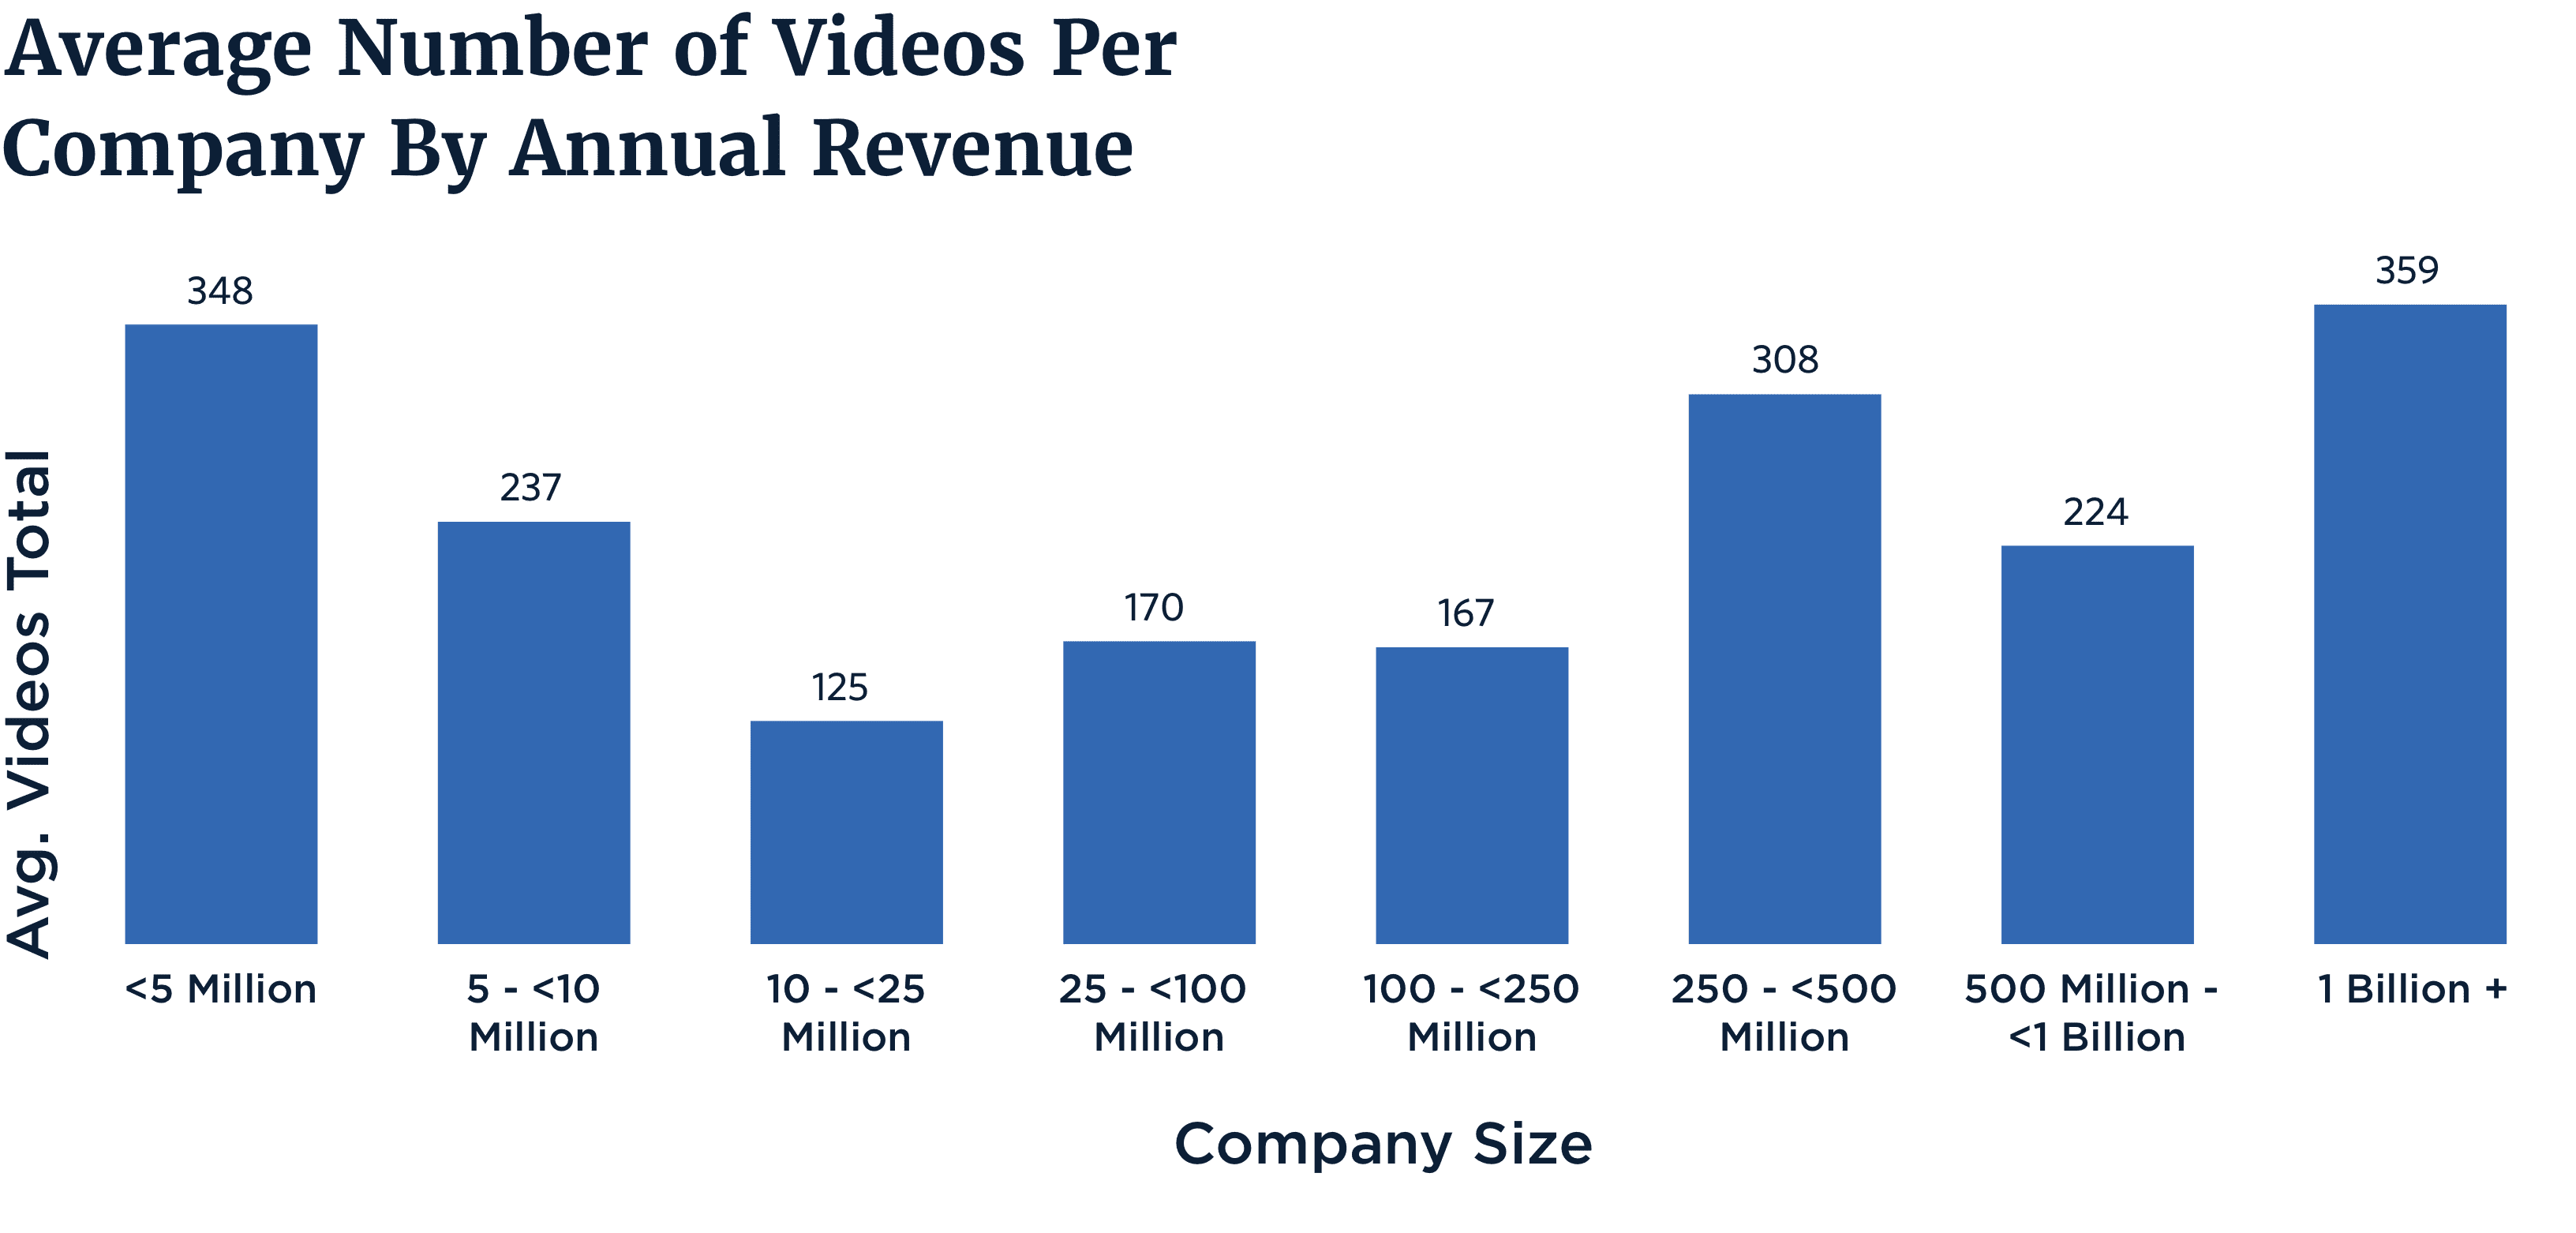 average, videos, per company, graphic, statistics